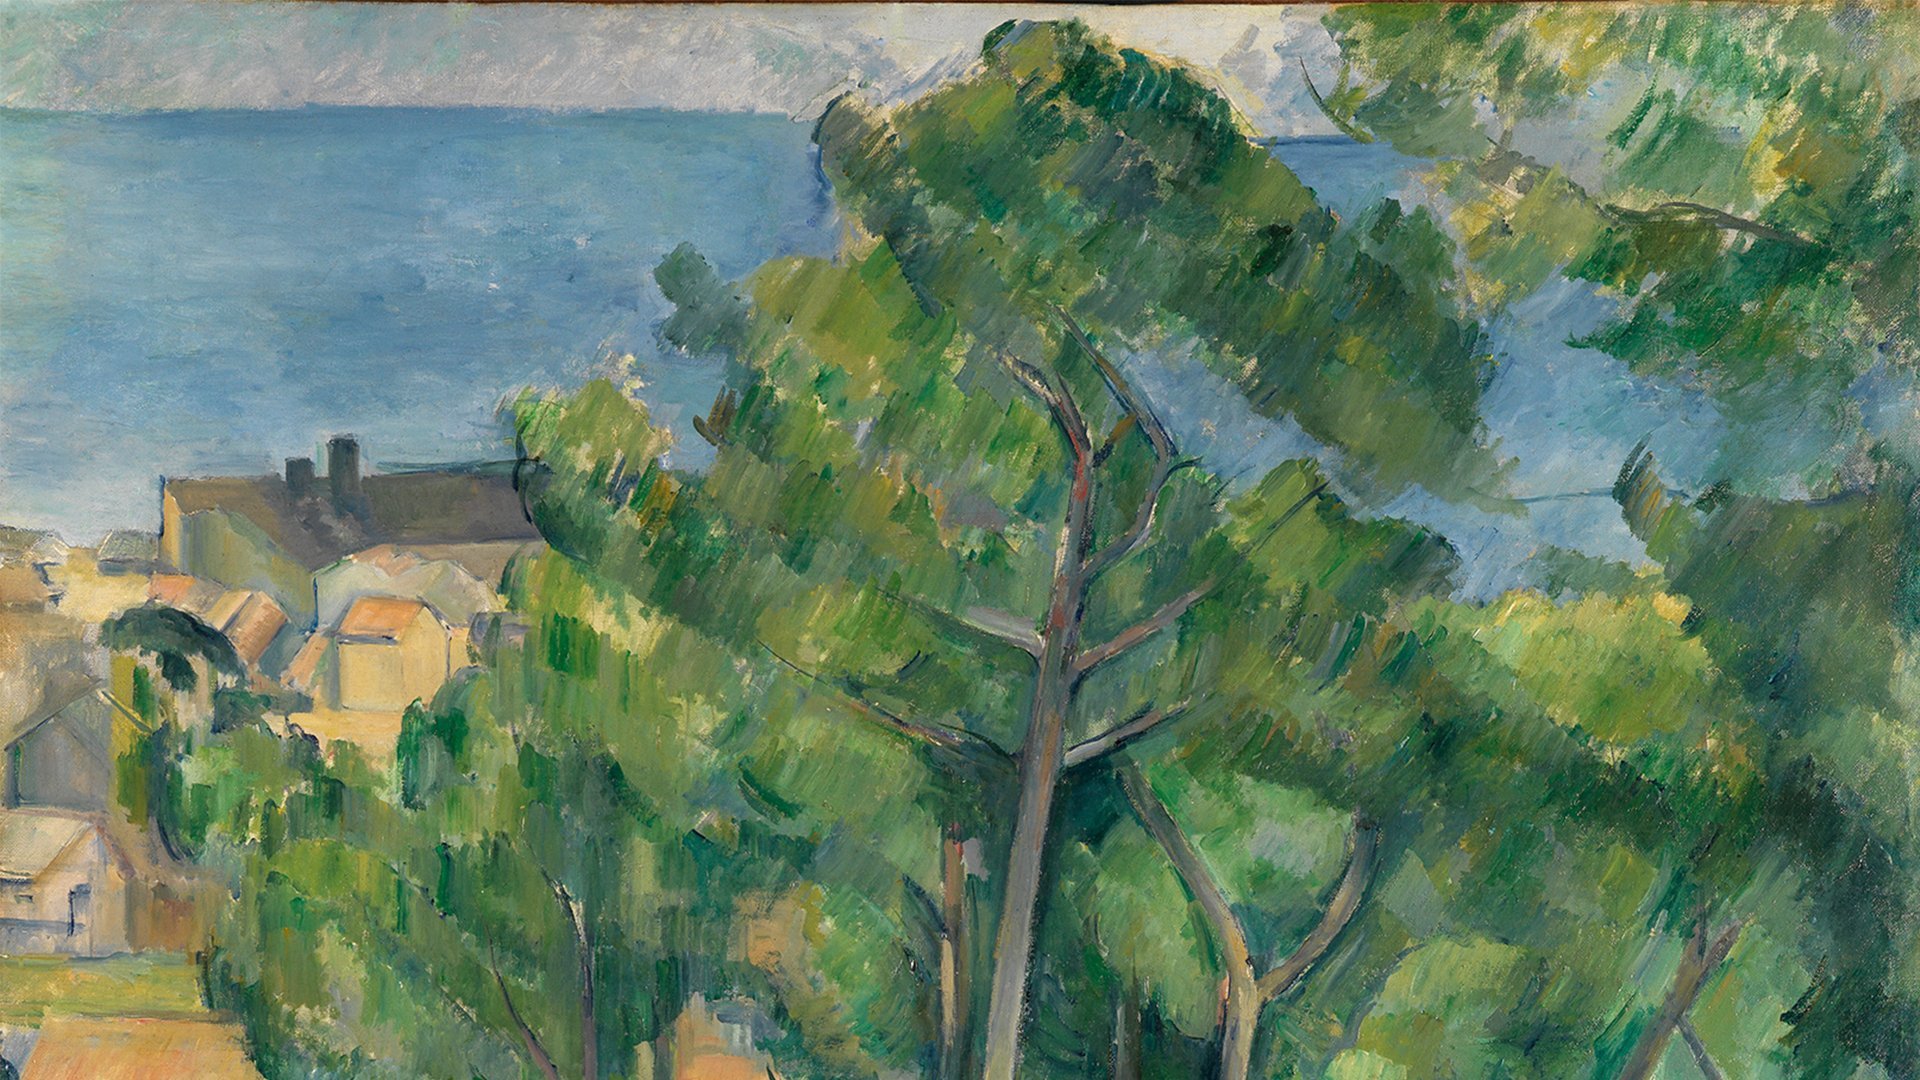 Abbildung des Werks "Blick auf das Meer bei L'Estaque" des Künstlers Paul Cézanne, das in der Ausstellung "Cézanne Metamorphosen" vom 28. Oktober 2017 bis 11. Februar 2018 in der Staatlichen Kunsthalle Karlsruhe zu sehen war.